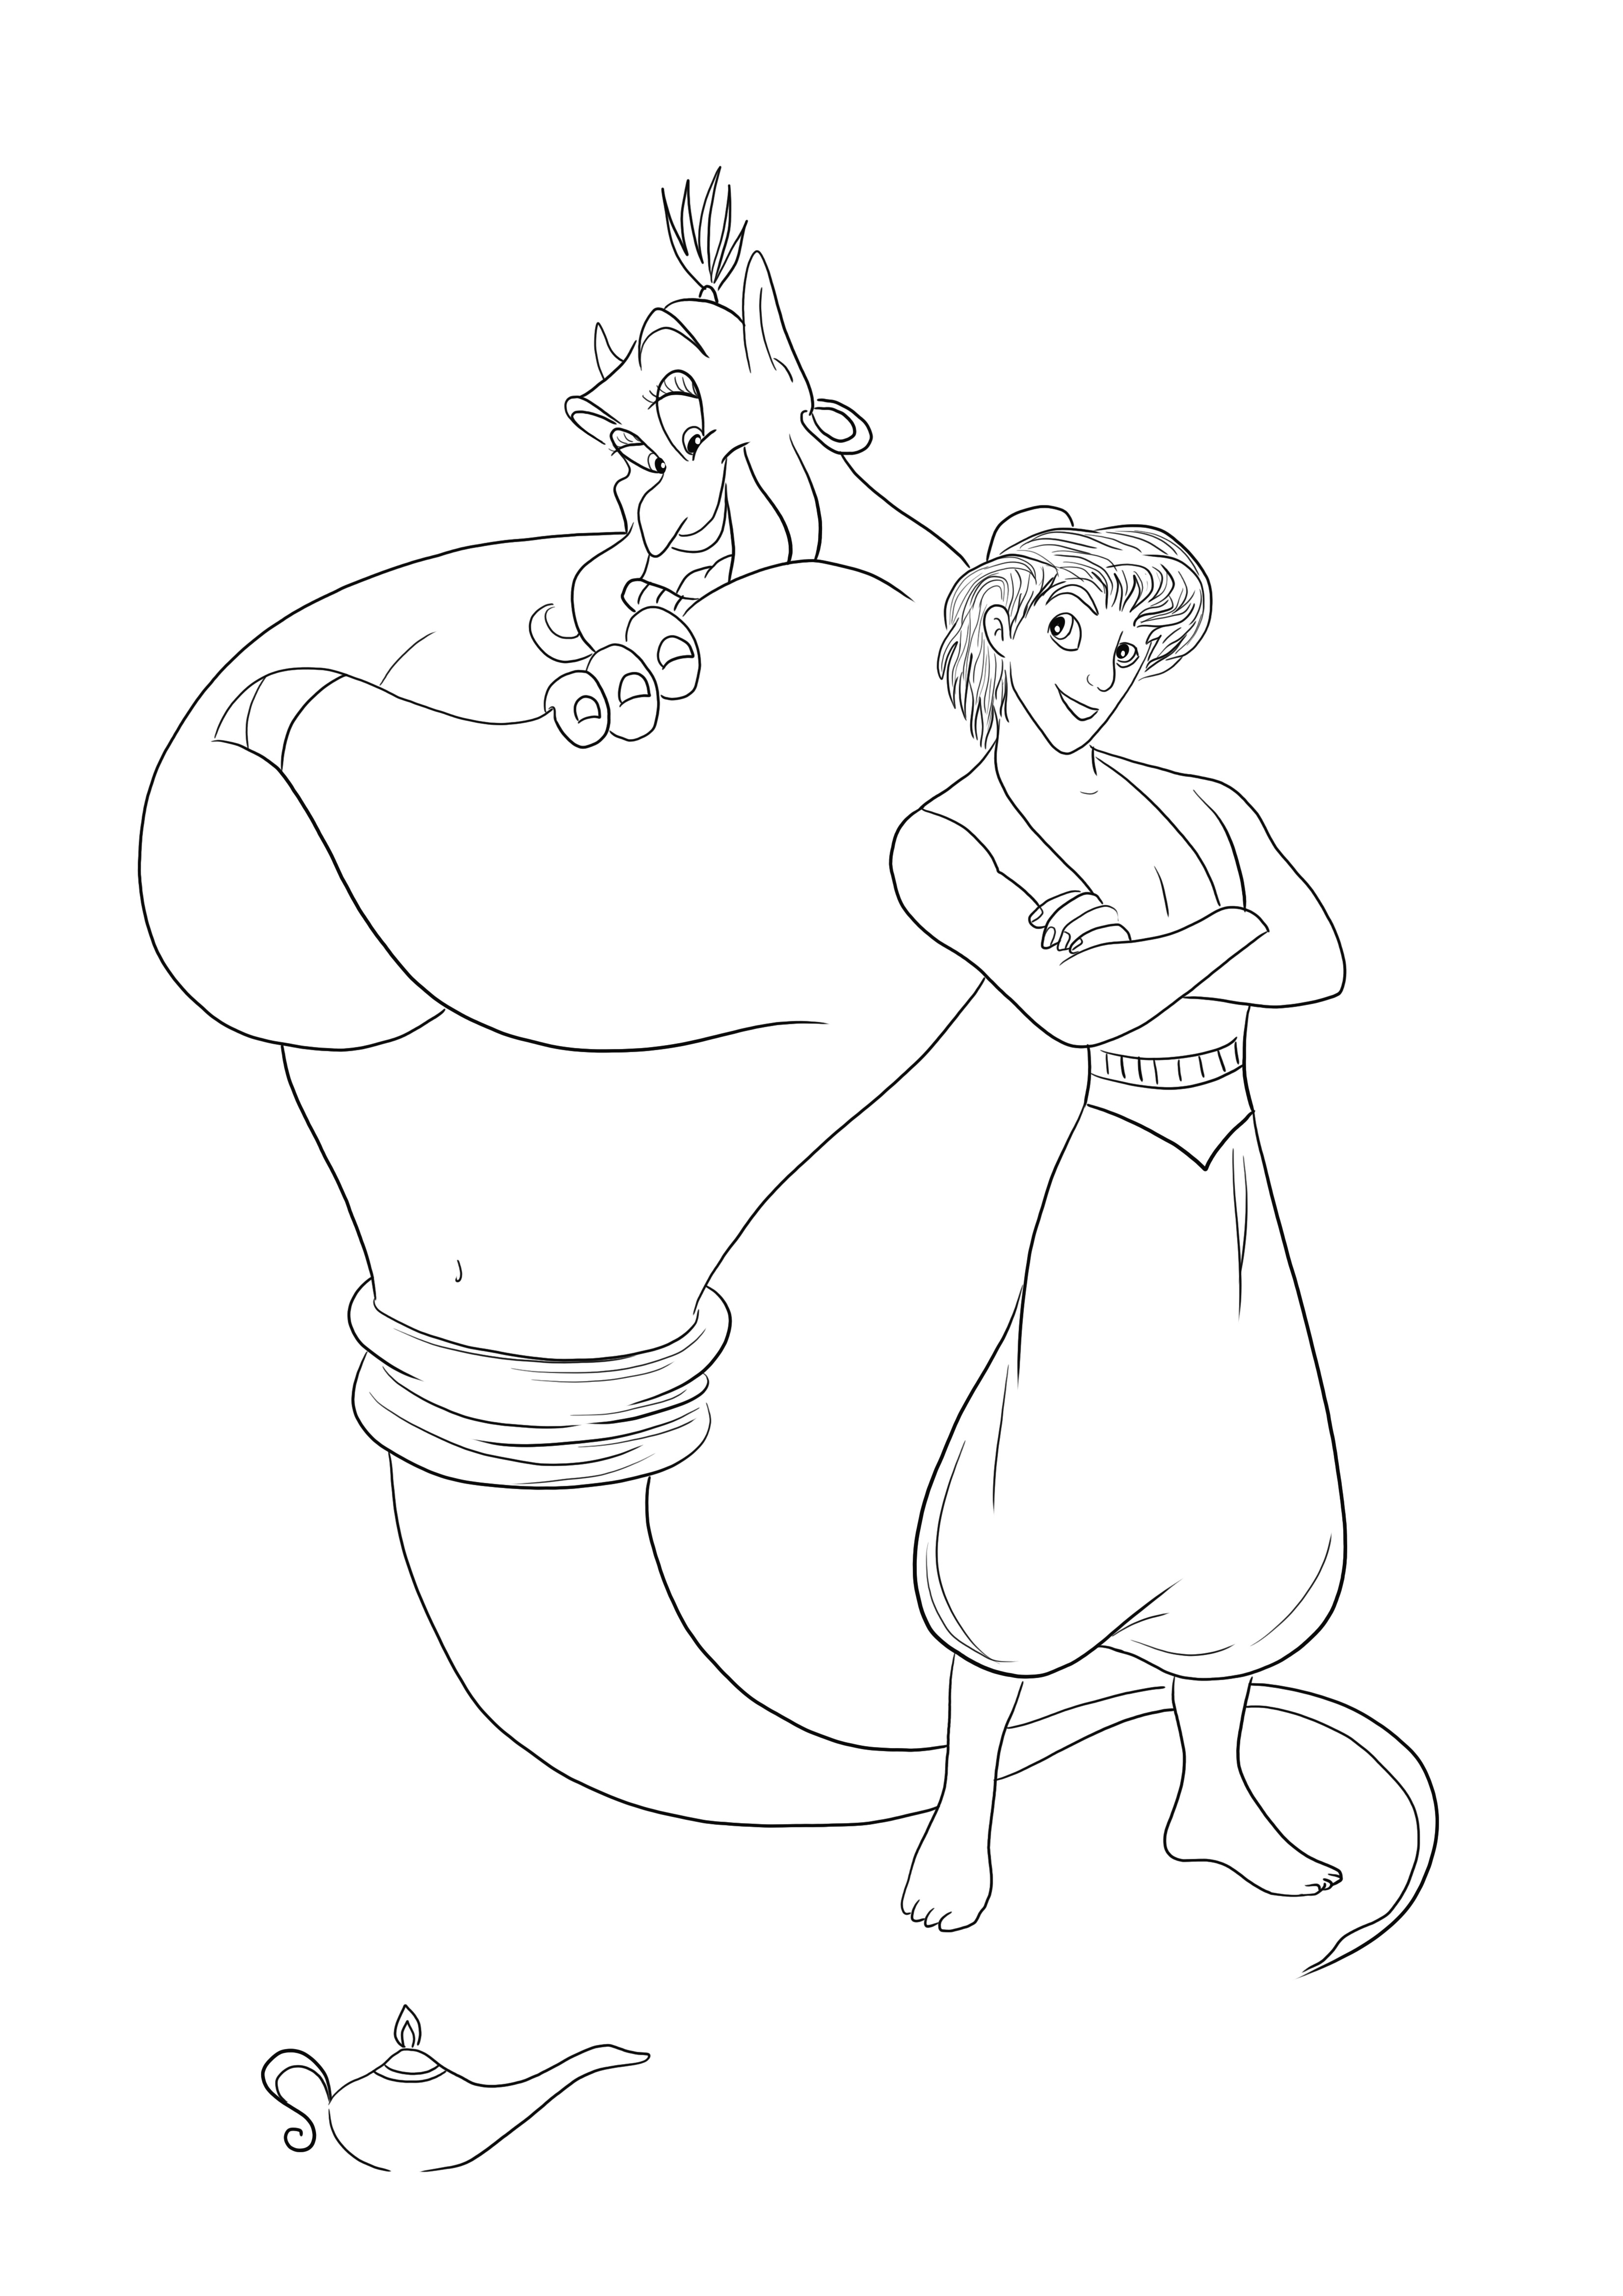 Gênio e Aladdin imprimível grátis para colorir e se divertir ao mesmo tempo